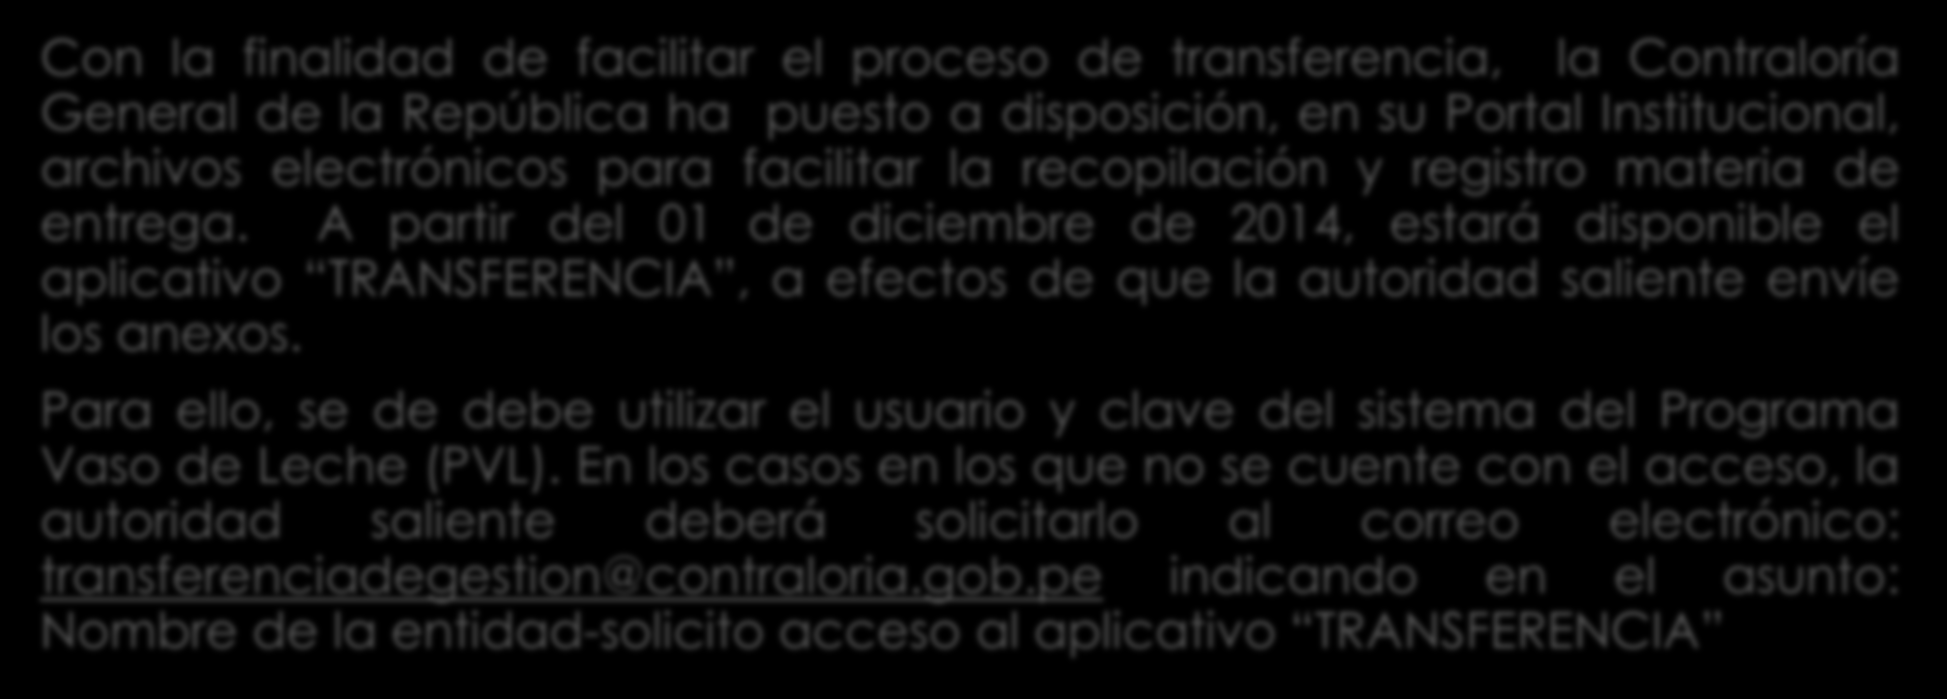 A partir del 01 de diciembre de 2014, estará disponible el aplicativo TRANSFERENCIA, a efectos de que la autoridad saliente envíe los anexos.